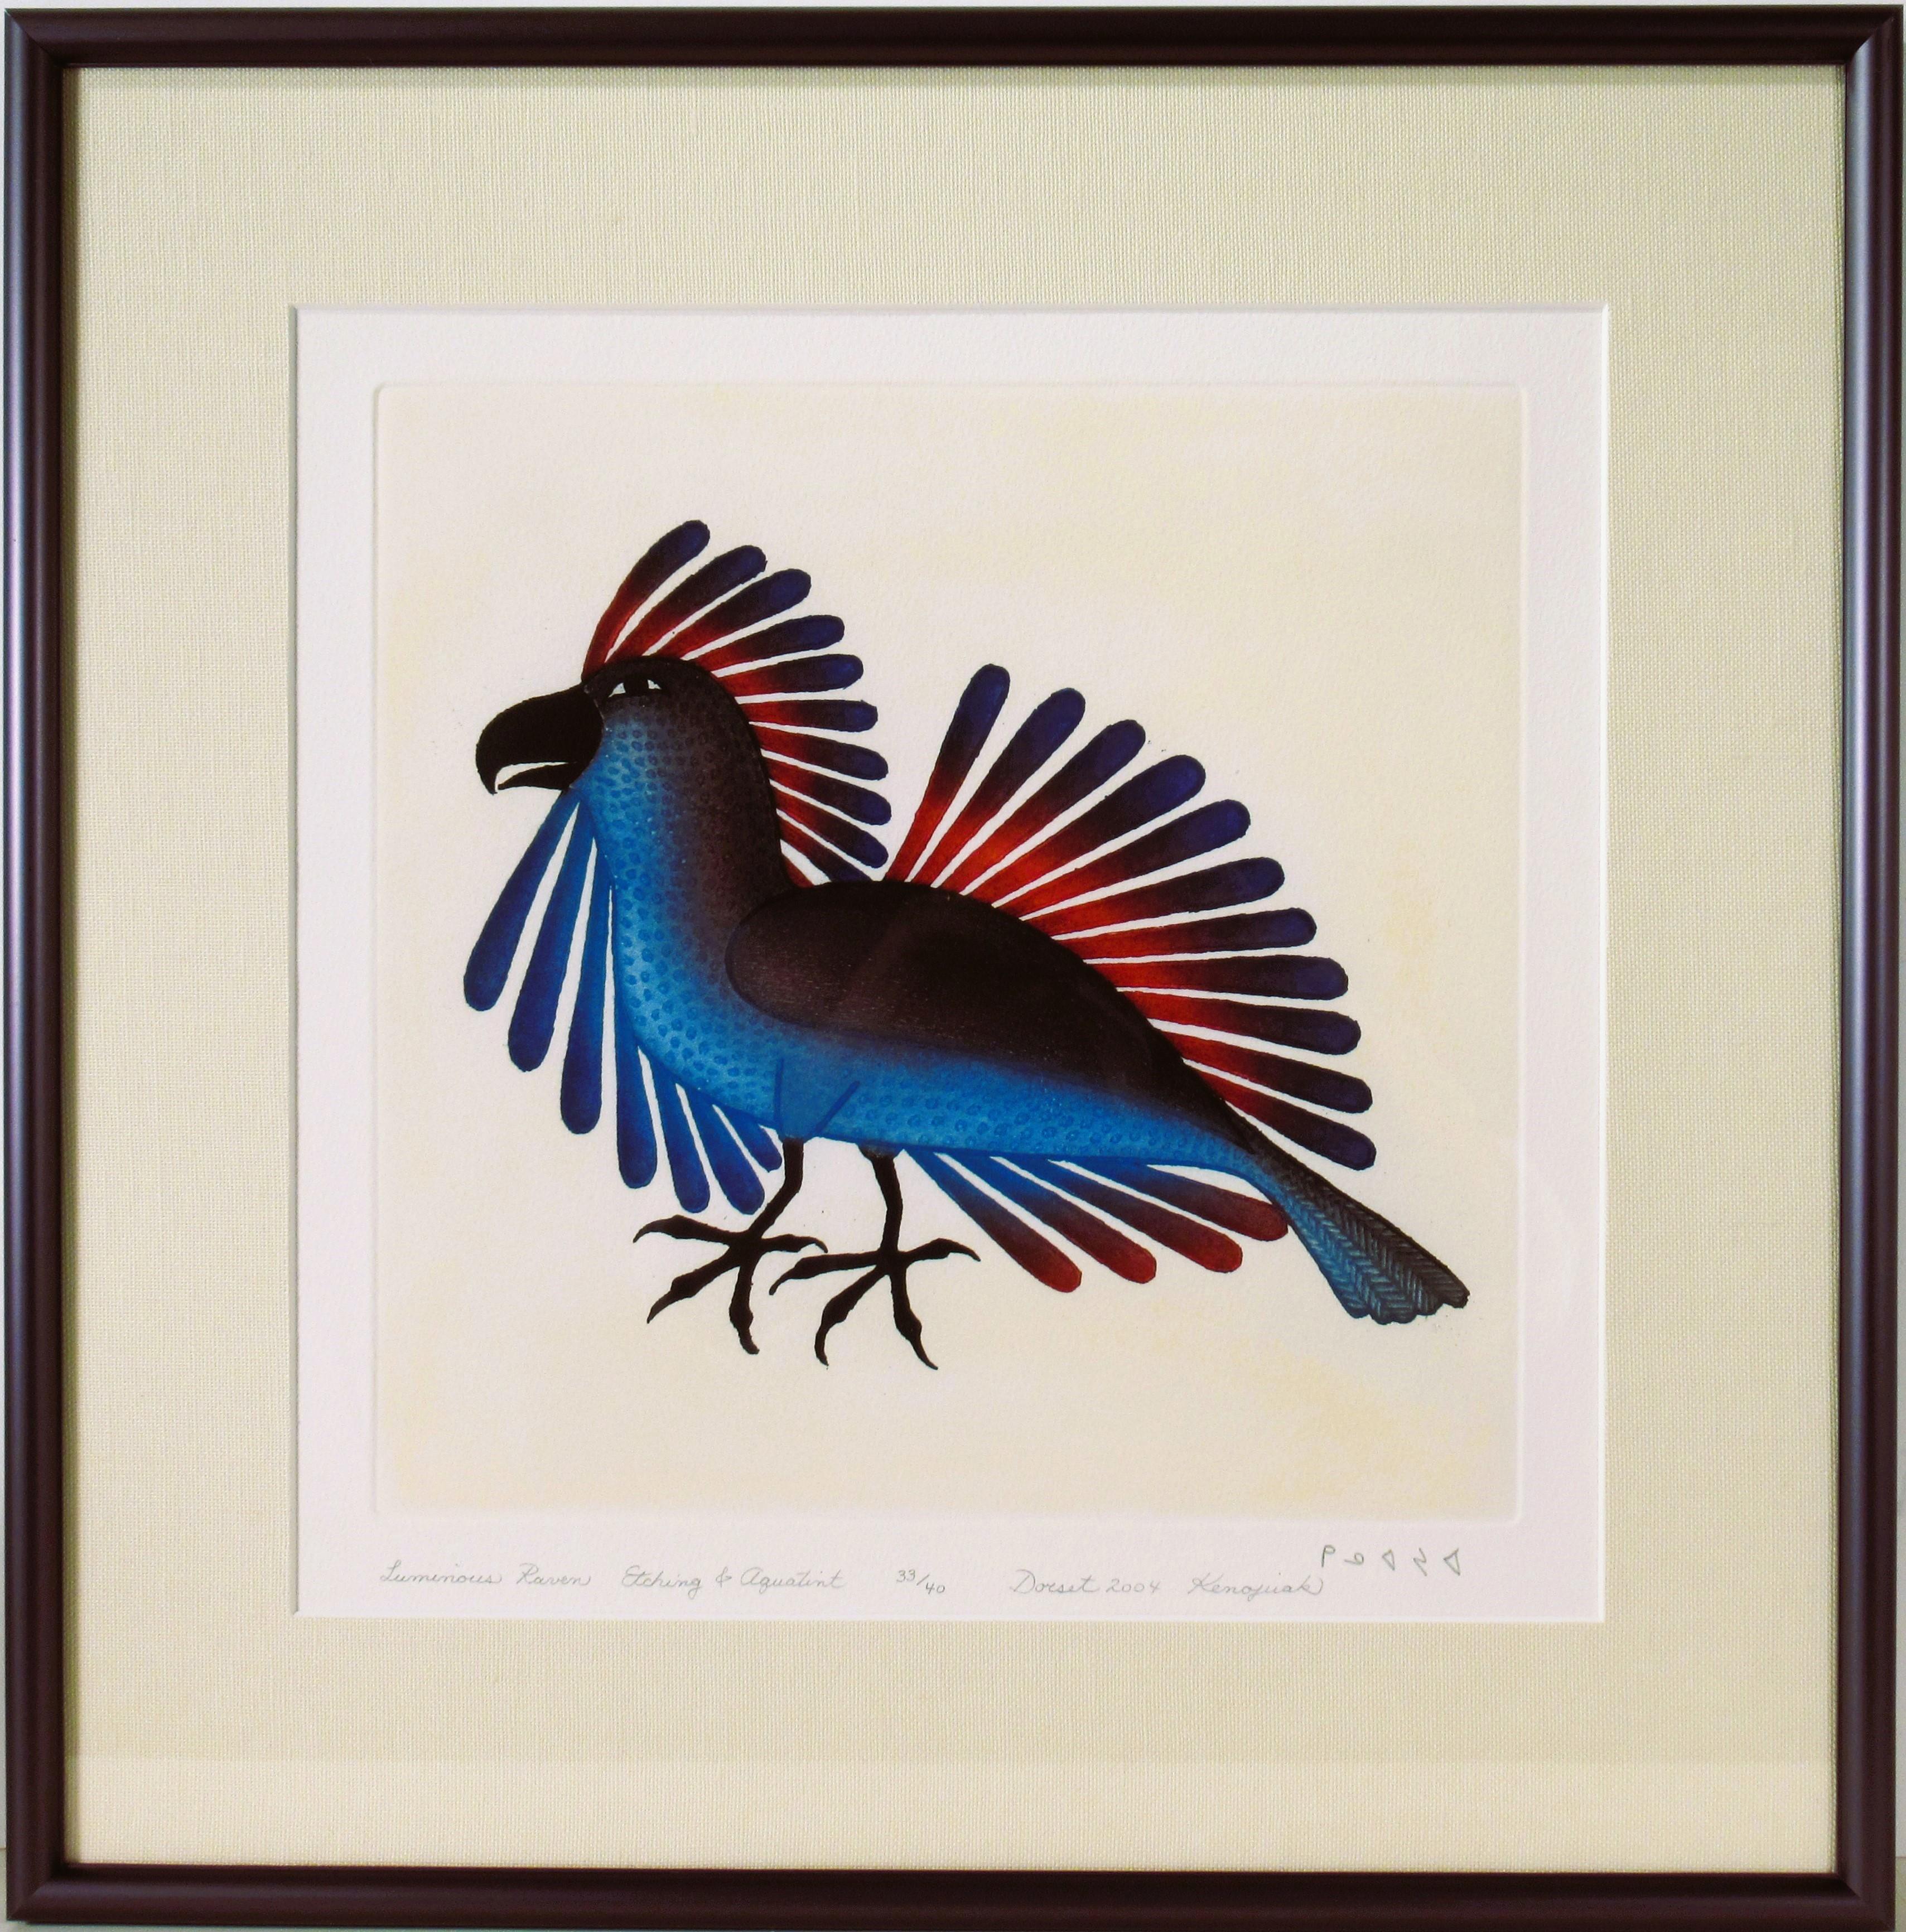 Kenojuak Ashevak Animal Print - Luminous Raven